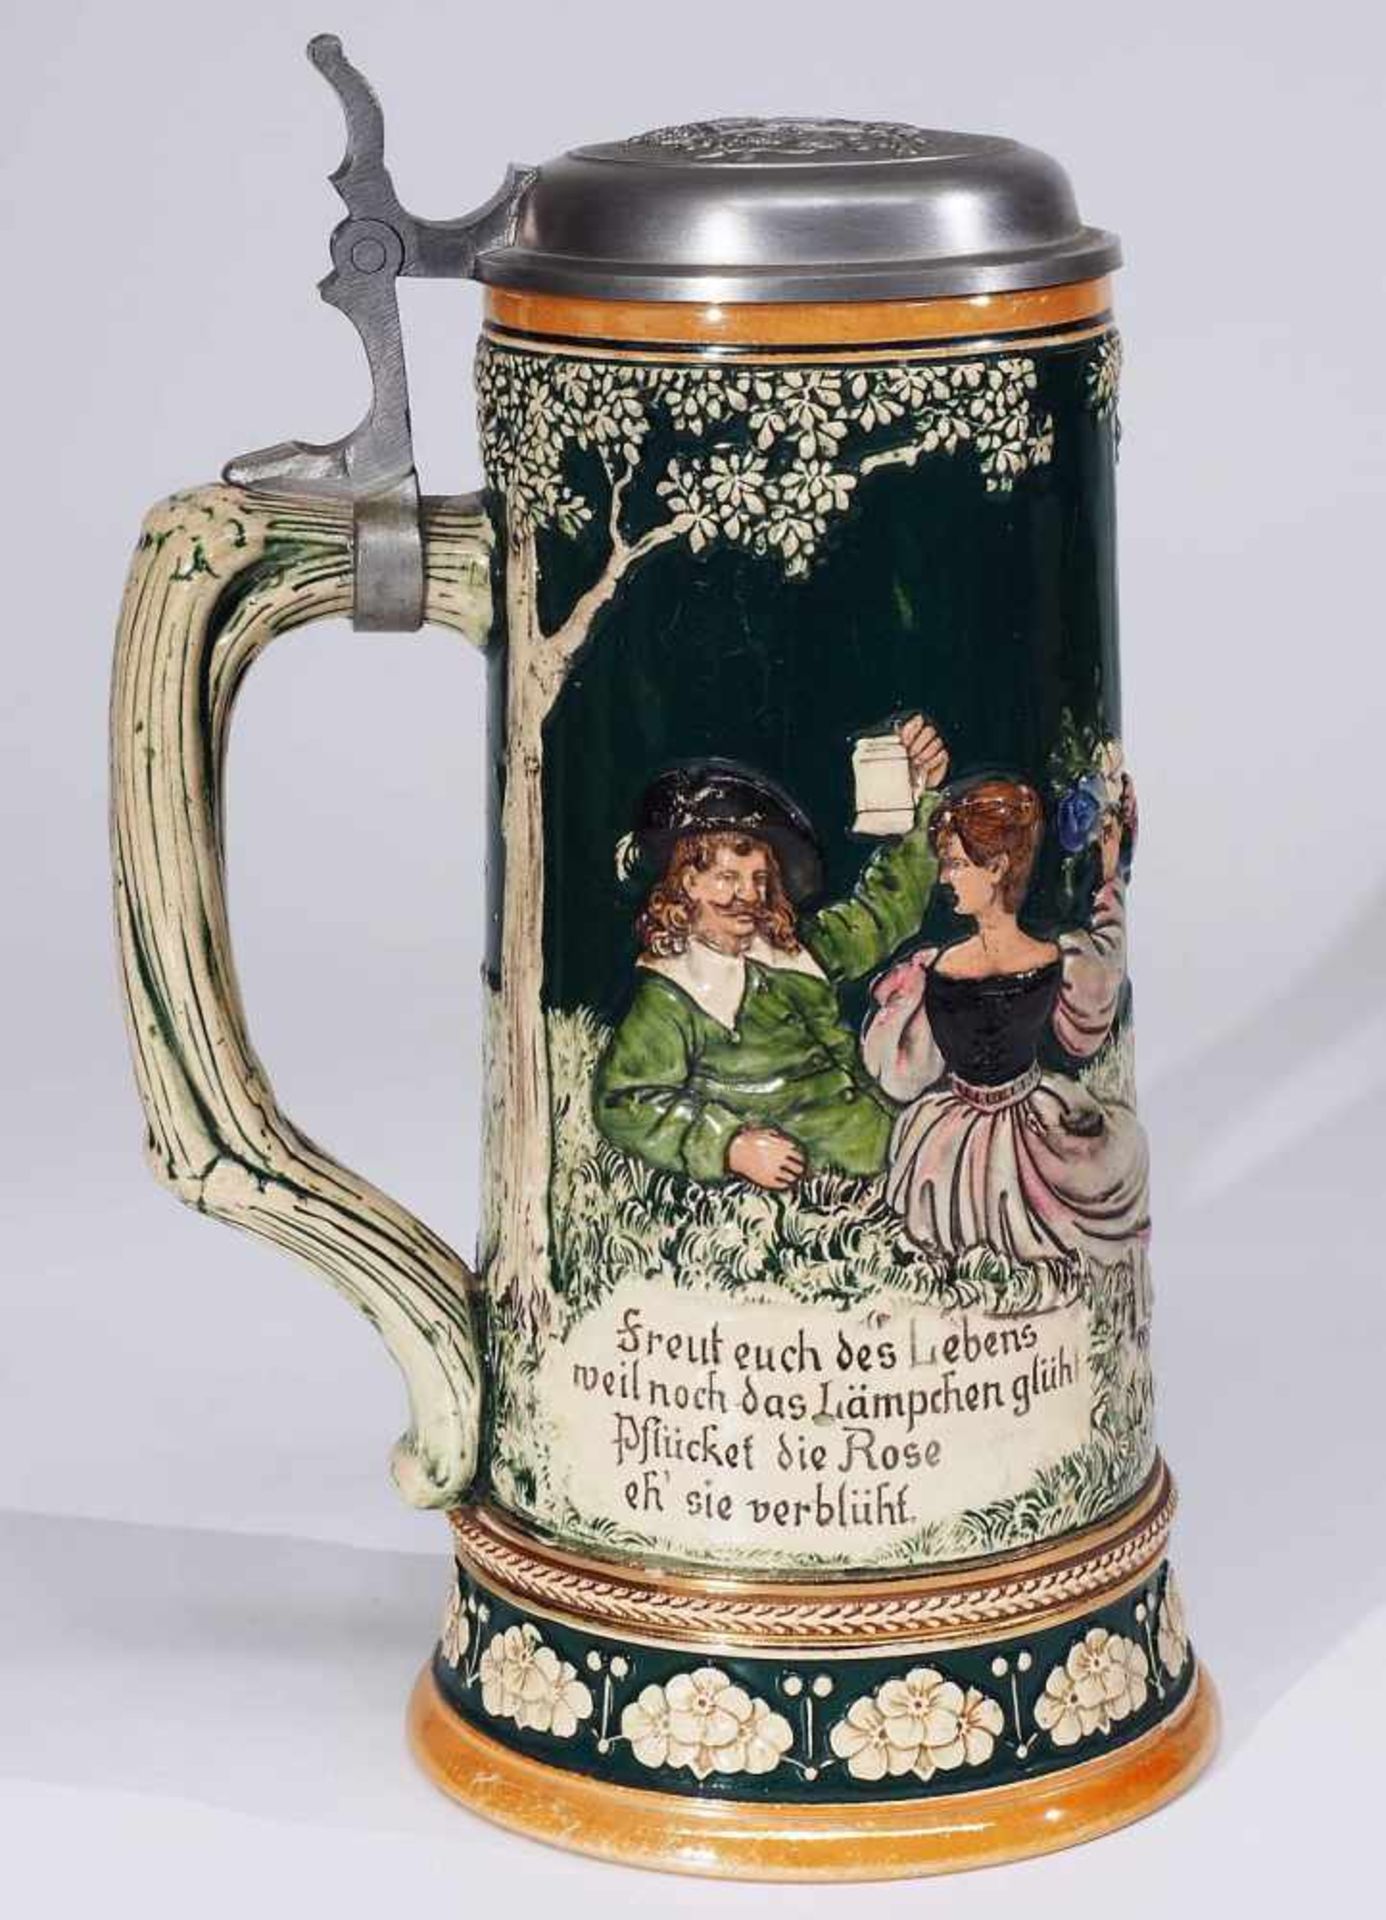 Bierkrug mit Reliefdekor und Zinndeckel. Bierkrug mit Reliefdekor und Zinndeckel. 20. Jahrhundert. - Bild 4 aus 7